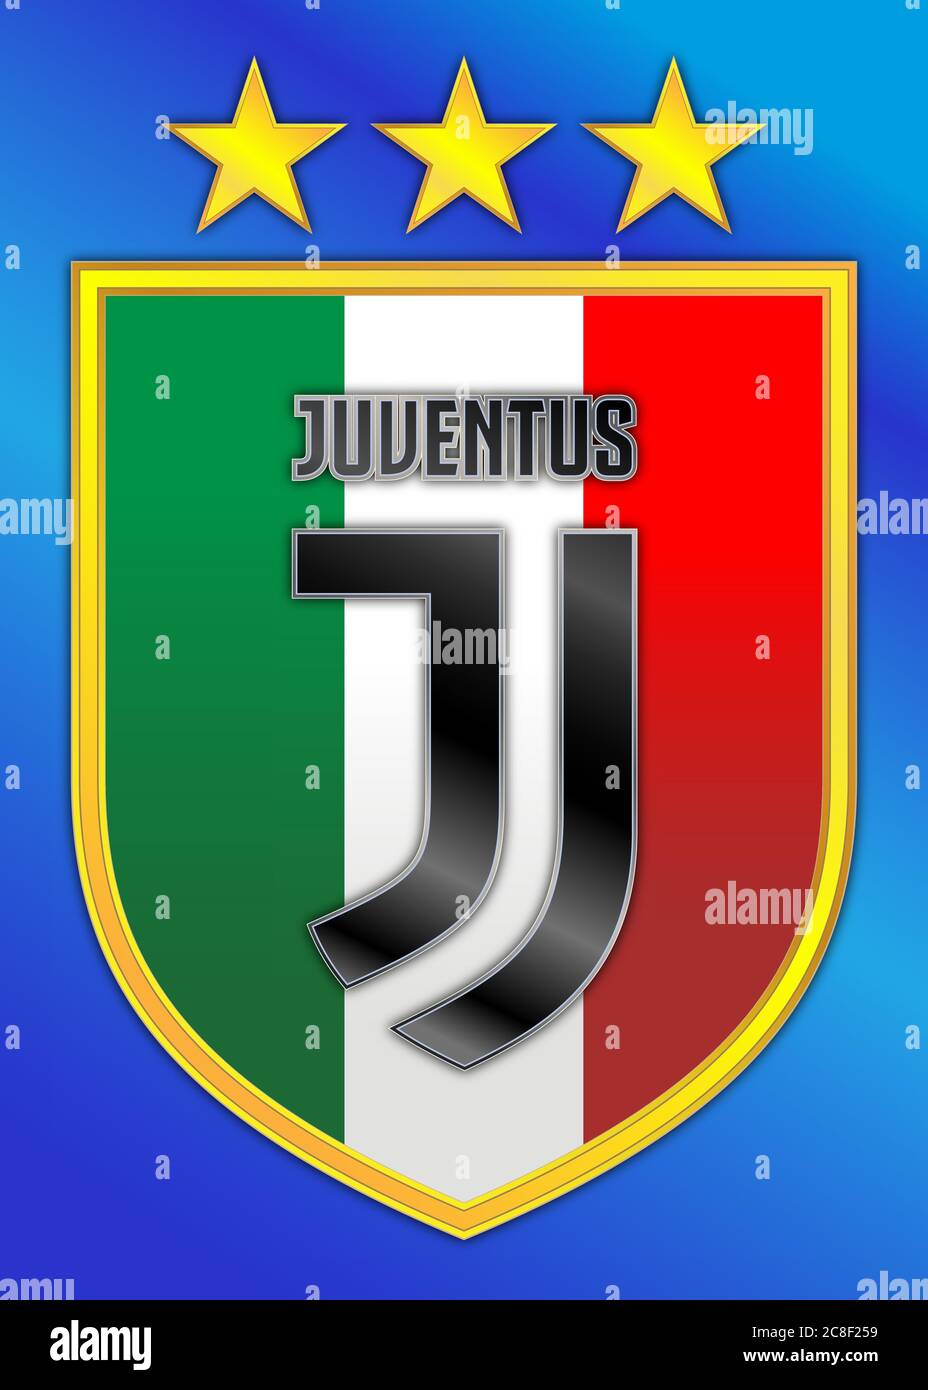 Italie, championnat de football 2019-2020, champion d'italie de Juventus, logo de l'équipe sur l'écusson et trois étoiles dorées, illustration graphique Illustration de Vecteur